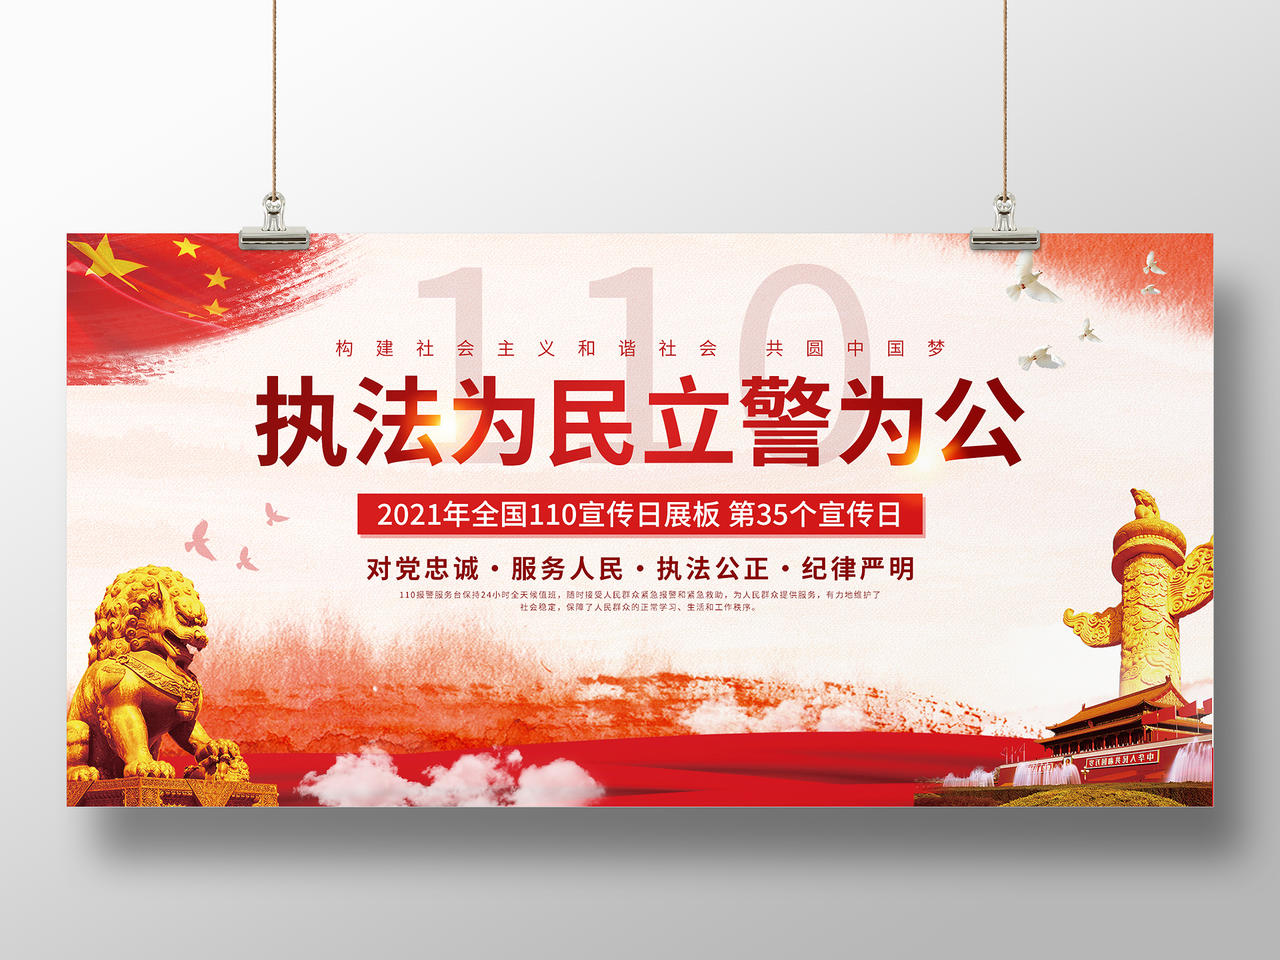 执法为民立警为公110 中国人民警察节110宣传日展板